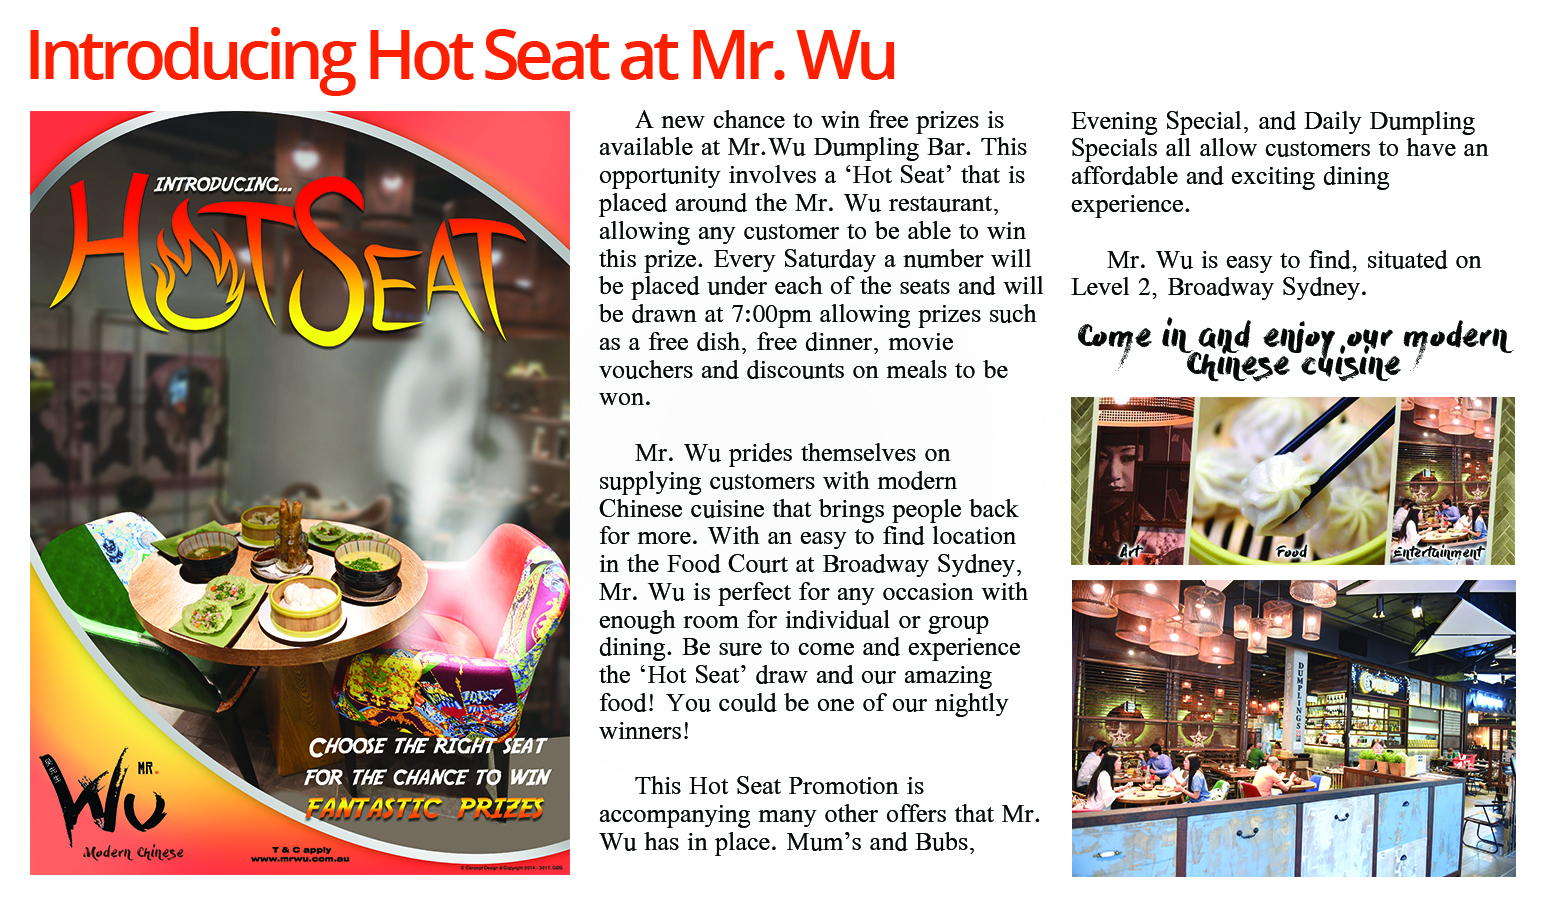 Hot Seat Mr. Wu